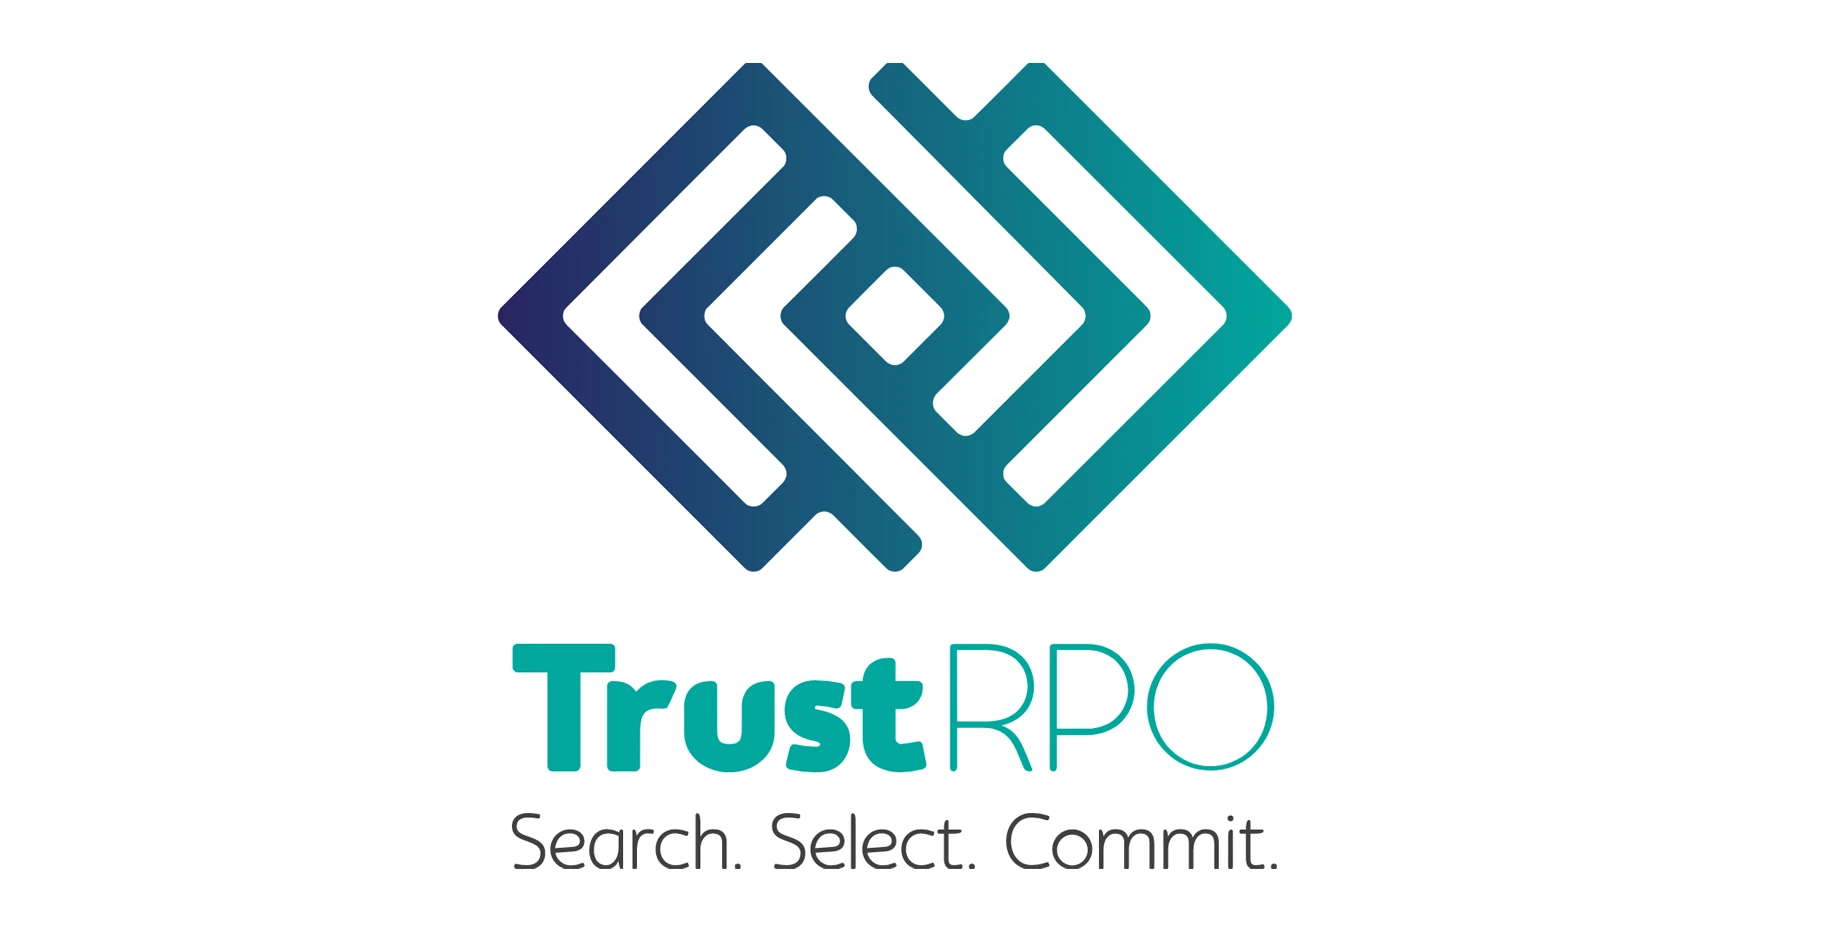  Trust RPO Client Logo